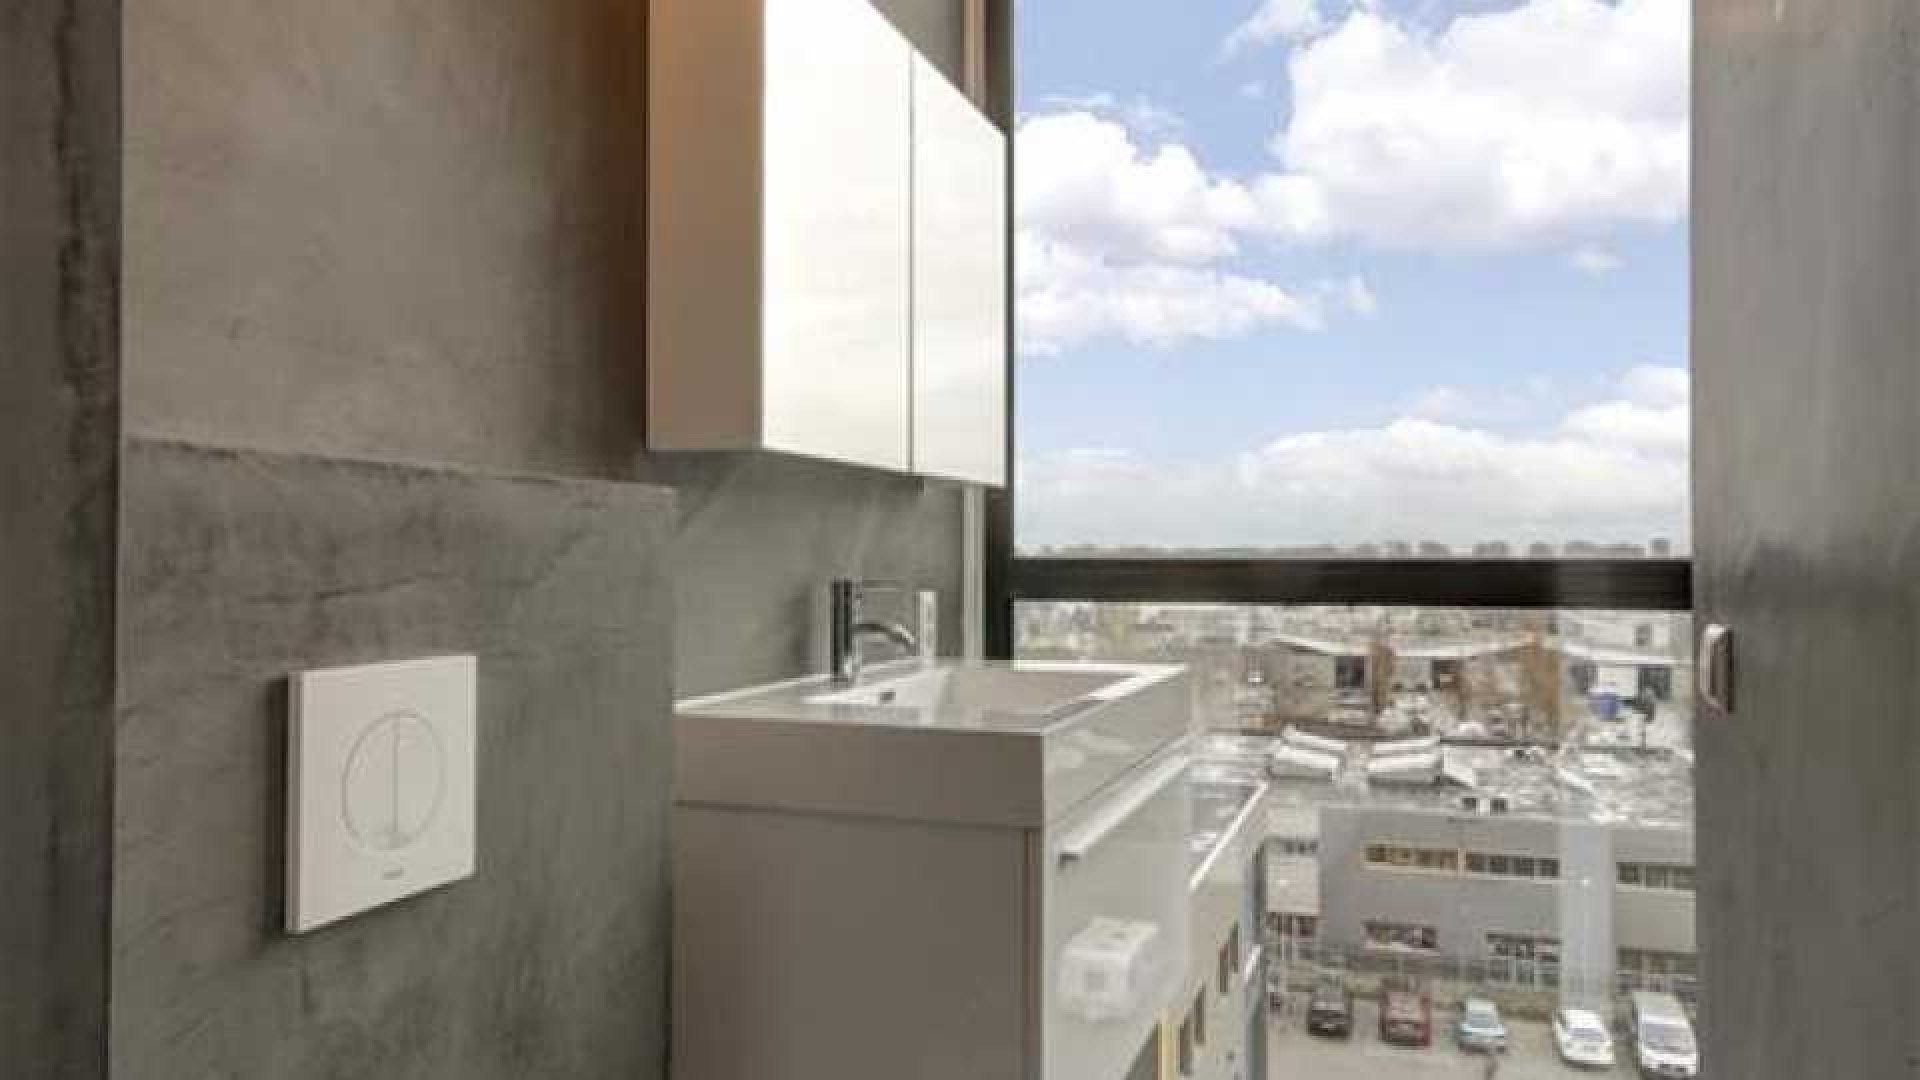 Ruben Nicolai koopt luxe en bijzonder appartement van bijna 1 miljoen euro. Zie foto's